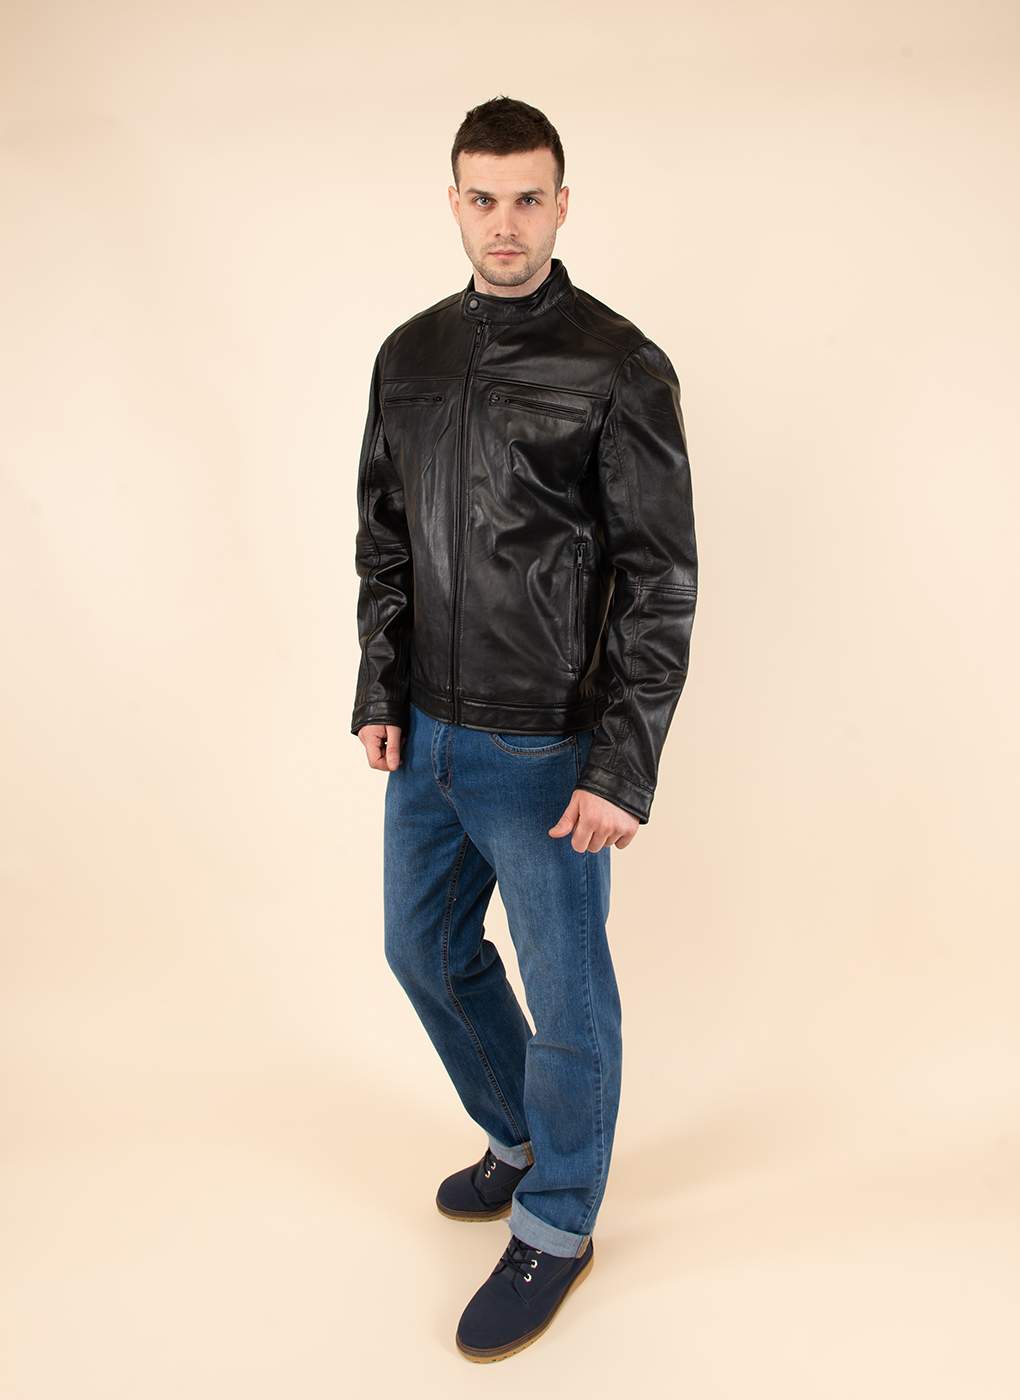 Кожаная куртка мужская Каляев 1614466 черная 60 RU